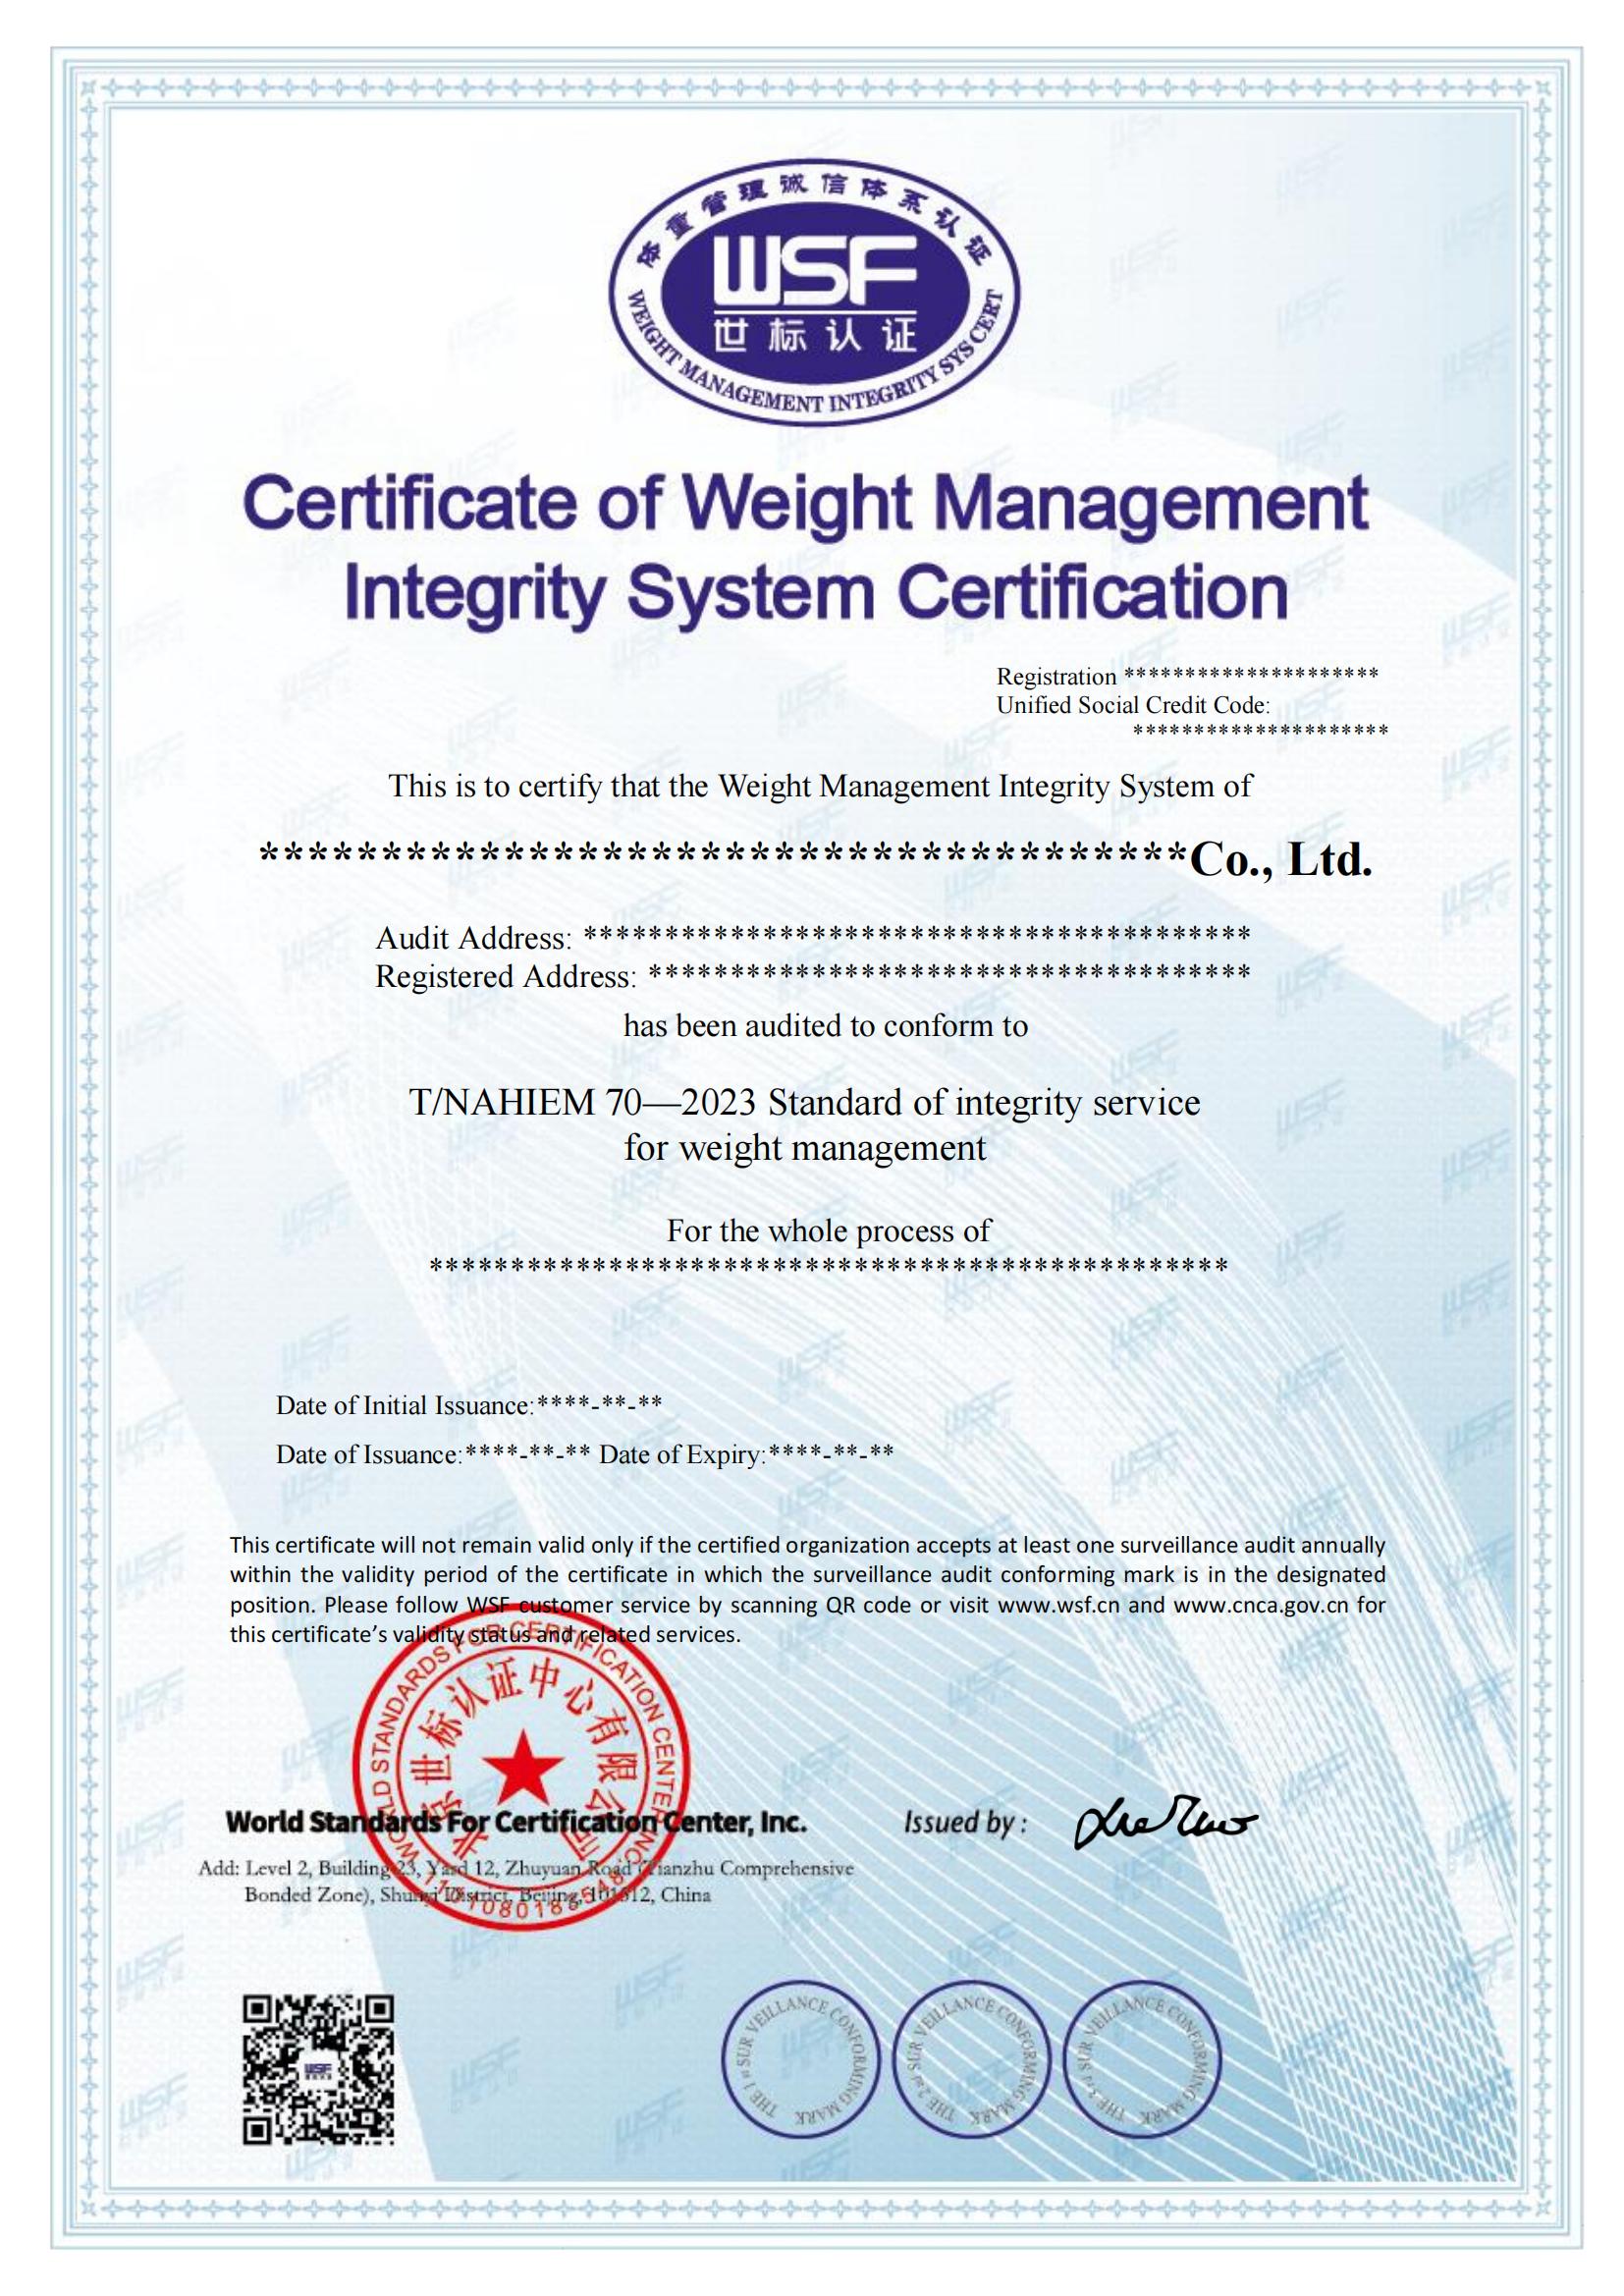 体重管理诚信体系认证证书样本--英文_00.jpg